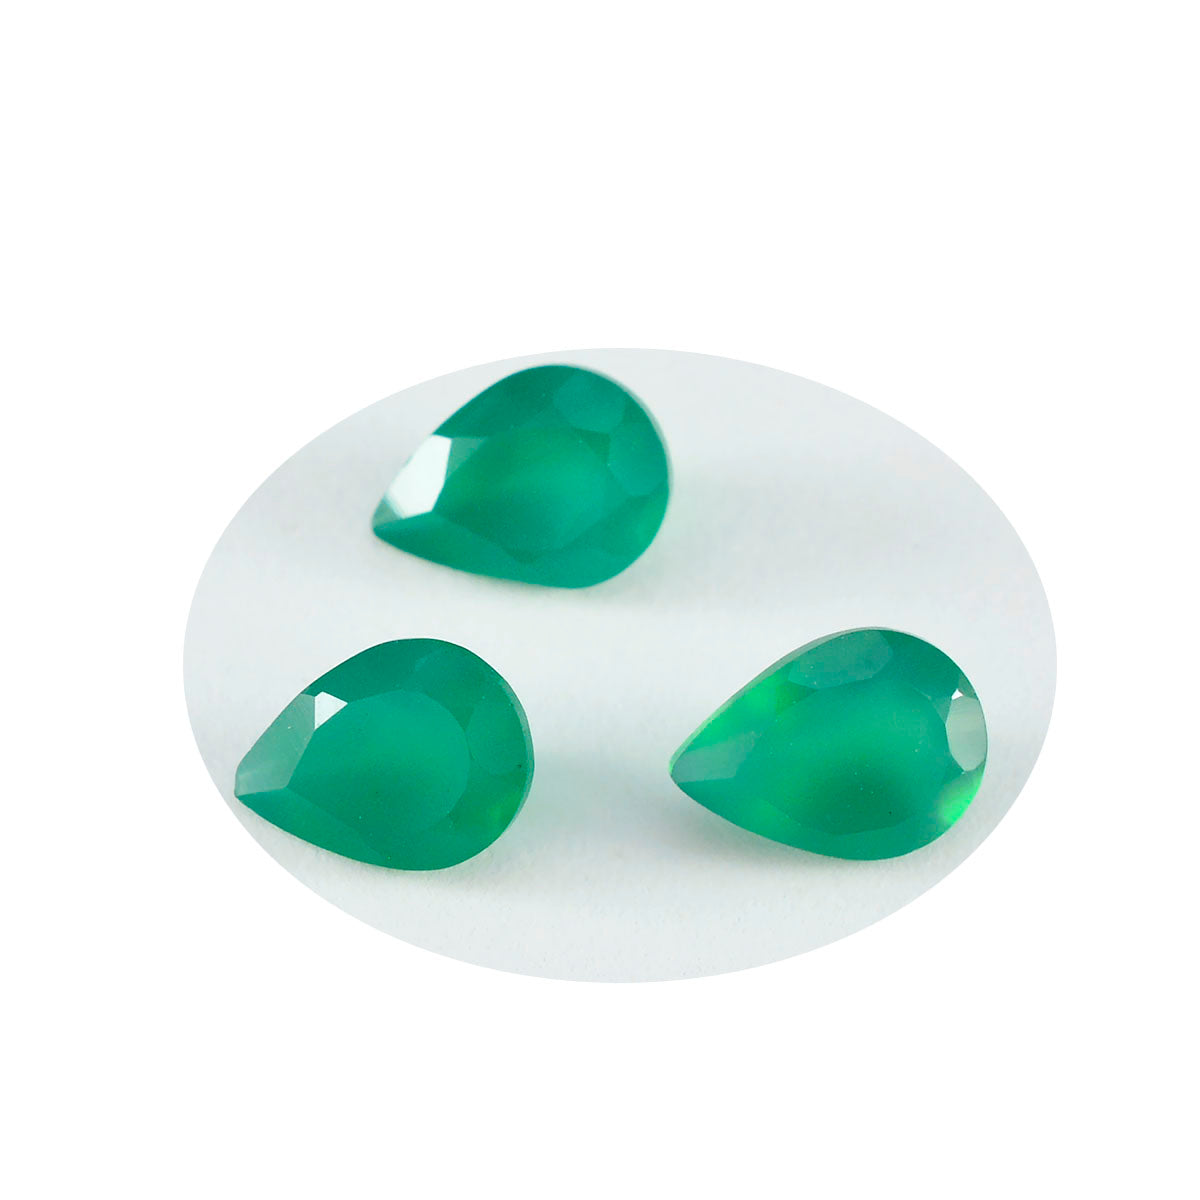 Riyogems 1PC Genuine Green Onyx Faceted 6x9 mm Pear Shape amazing Quality Gems